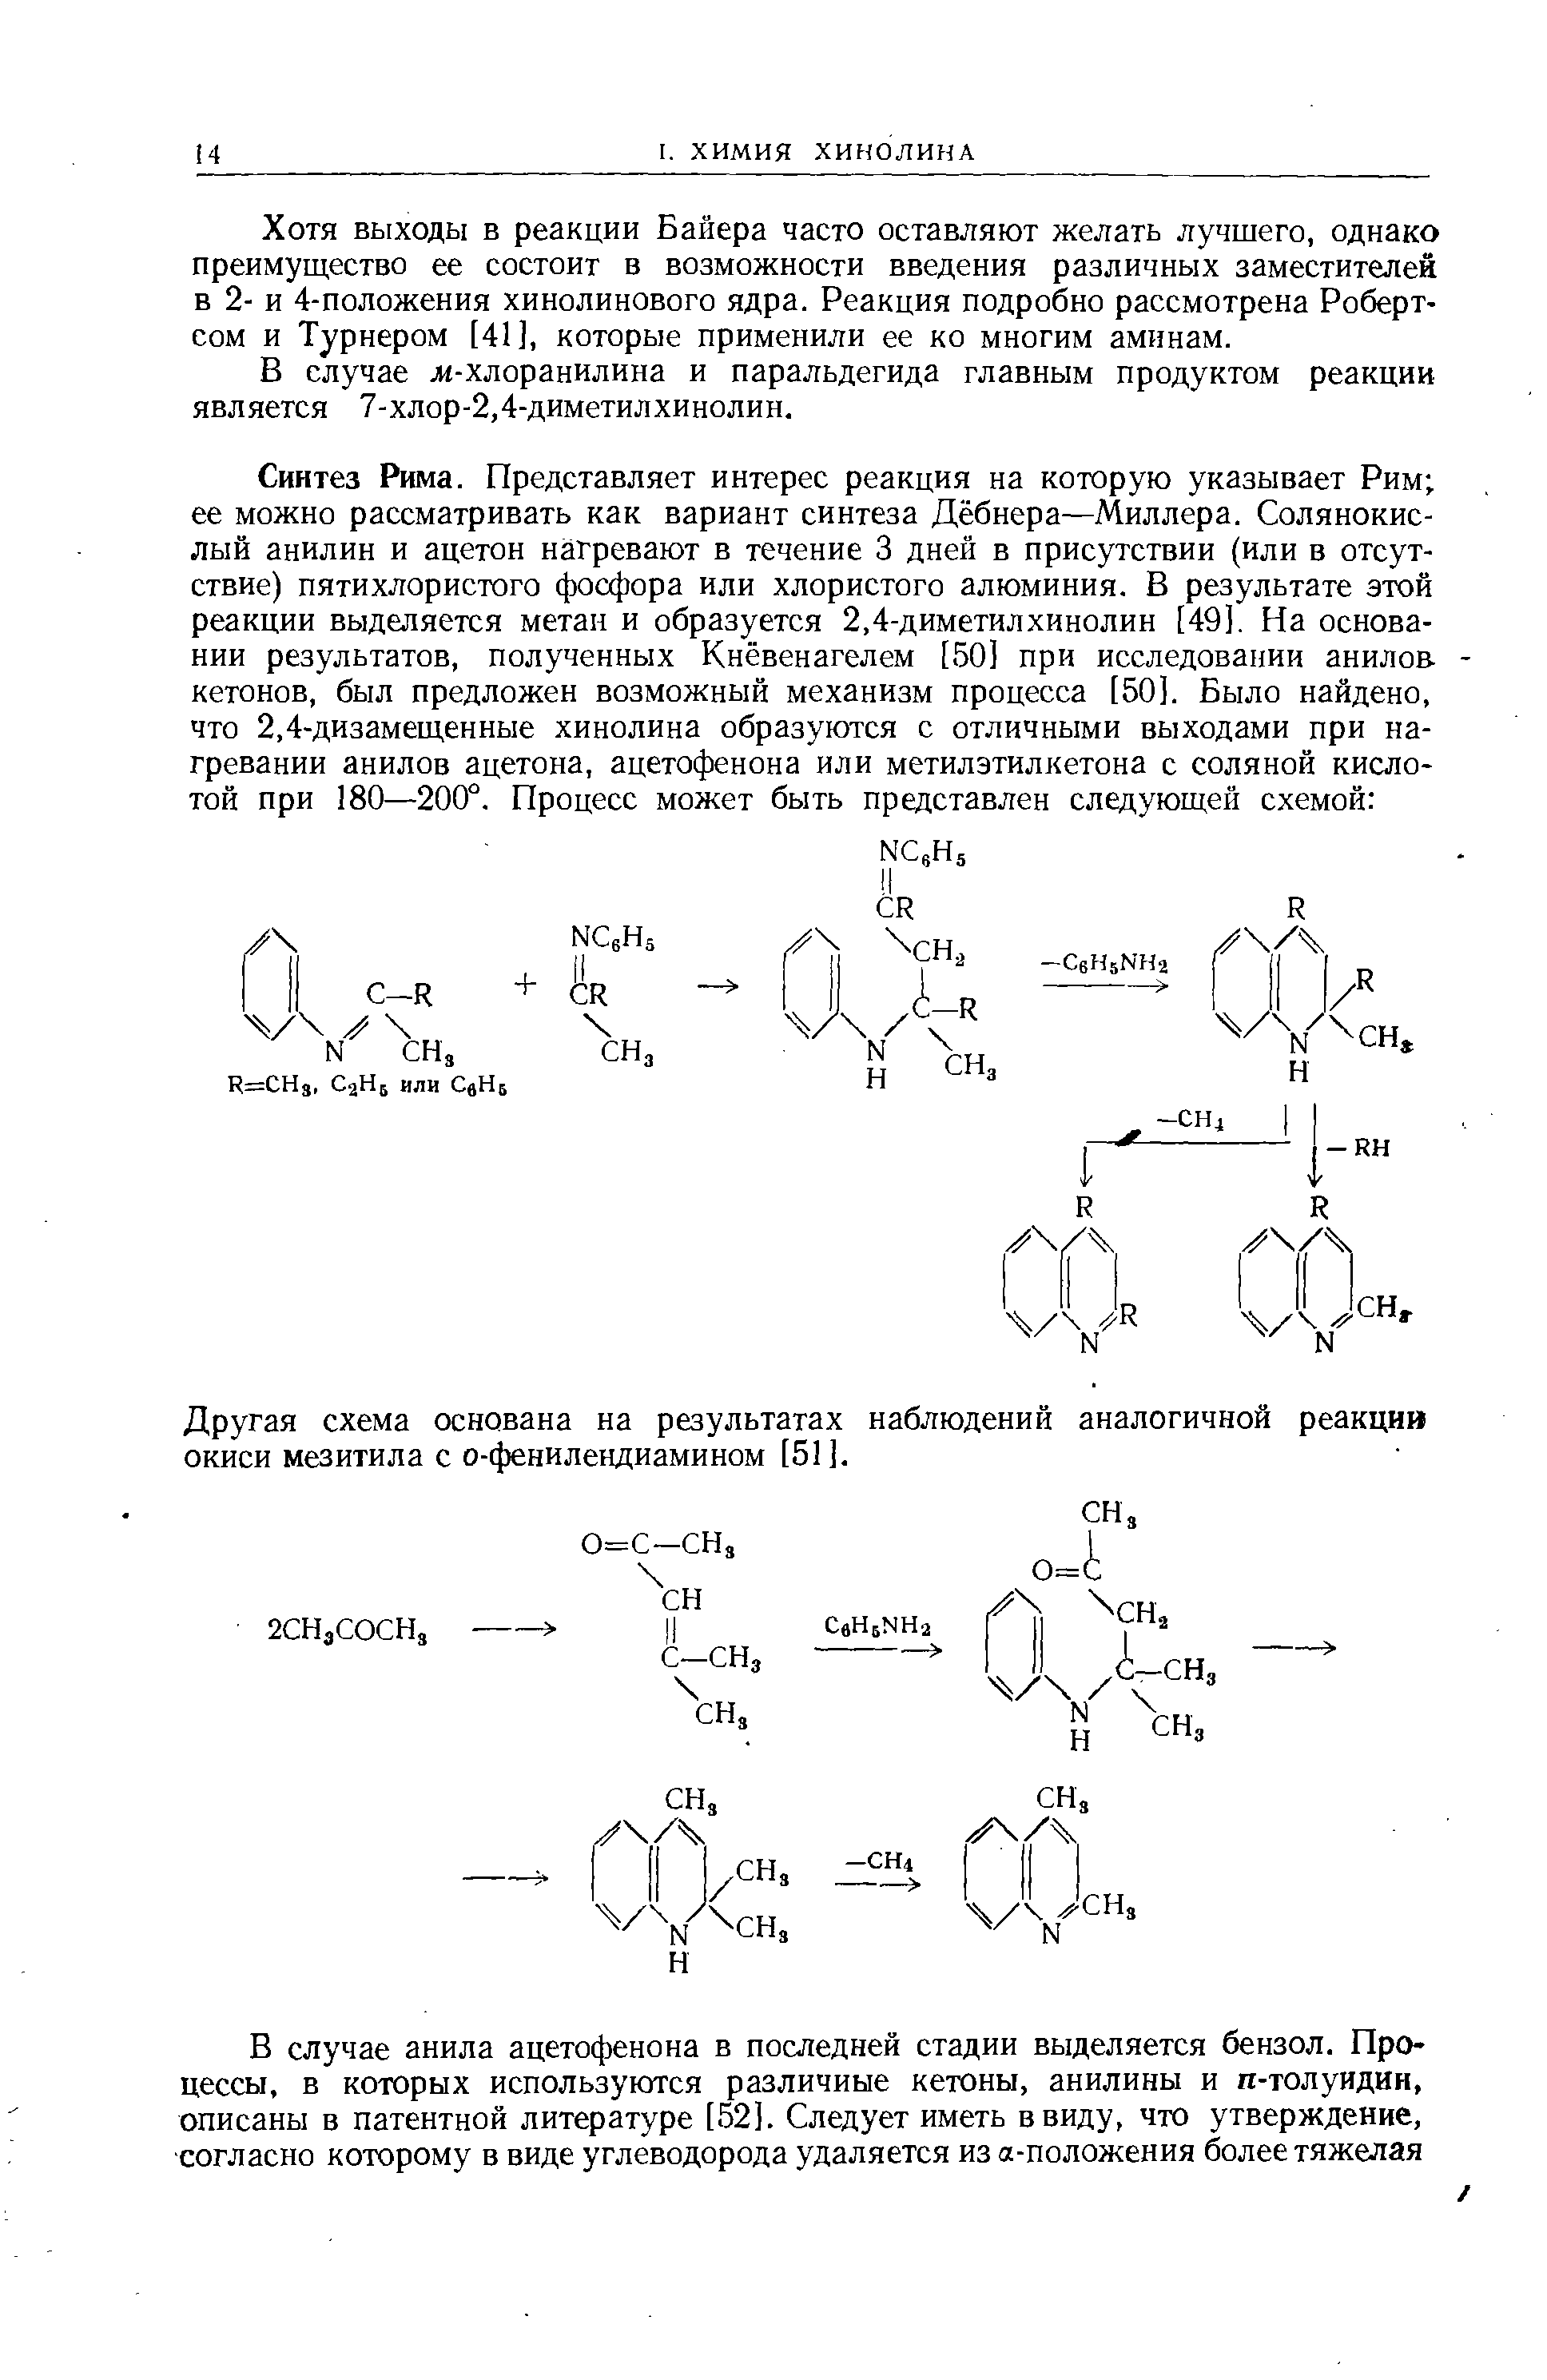 Другая схема основана на результатах наблюдений аналогичной реакции окиси мезитила с о-фенилендиамином [51].